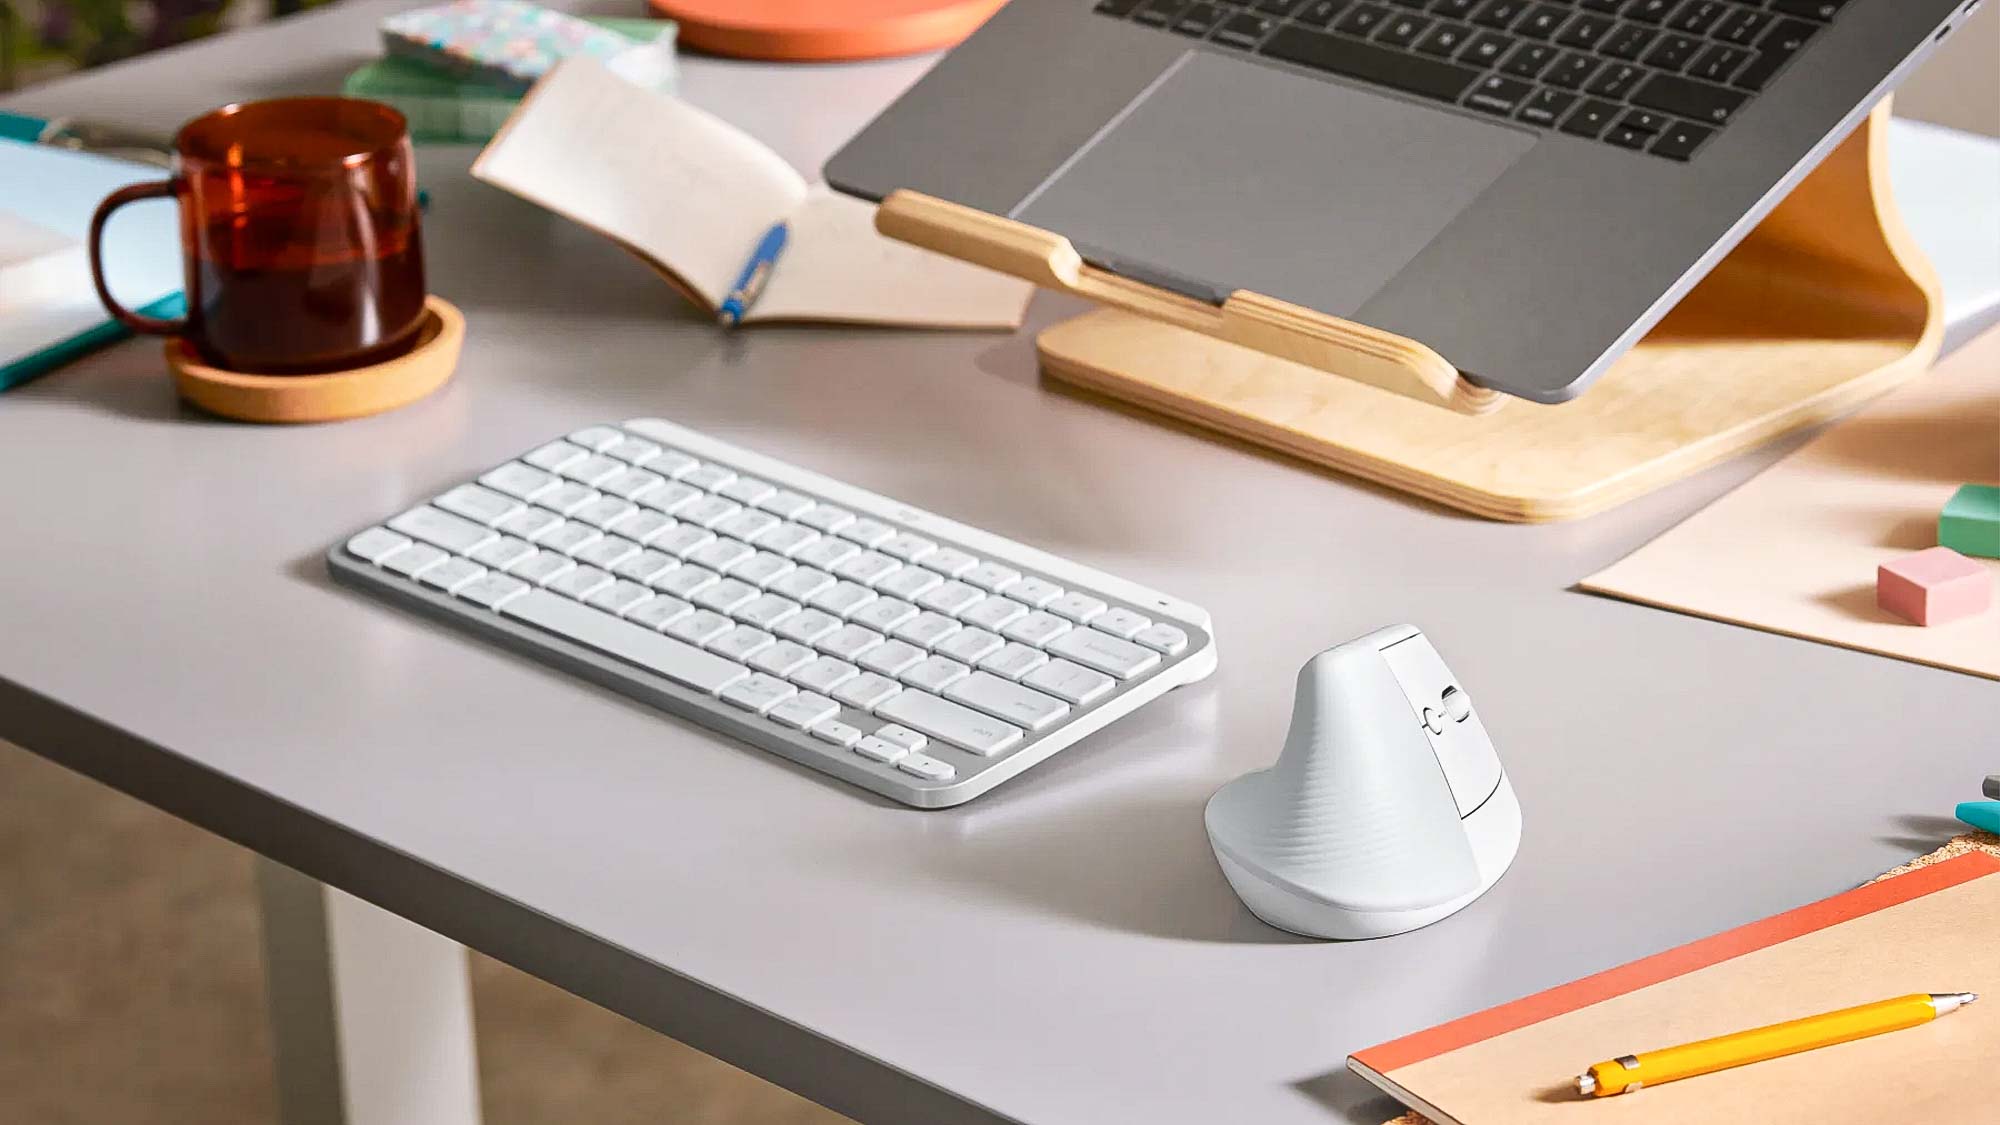 Logitech Lift Mouse Review: A Surprise - Slinky Studio